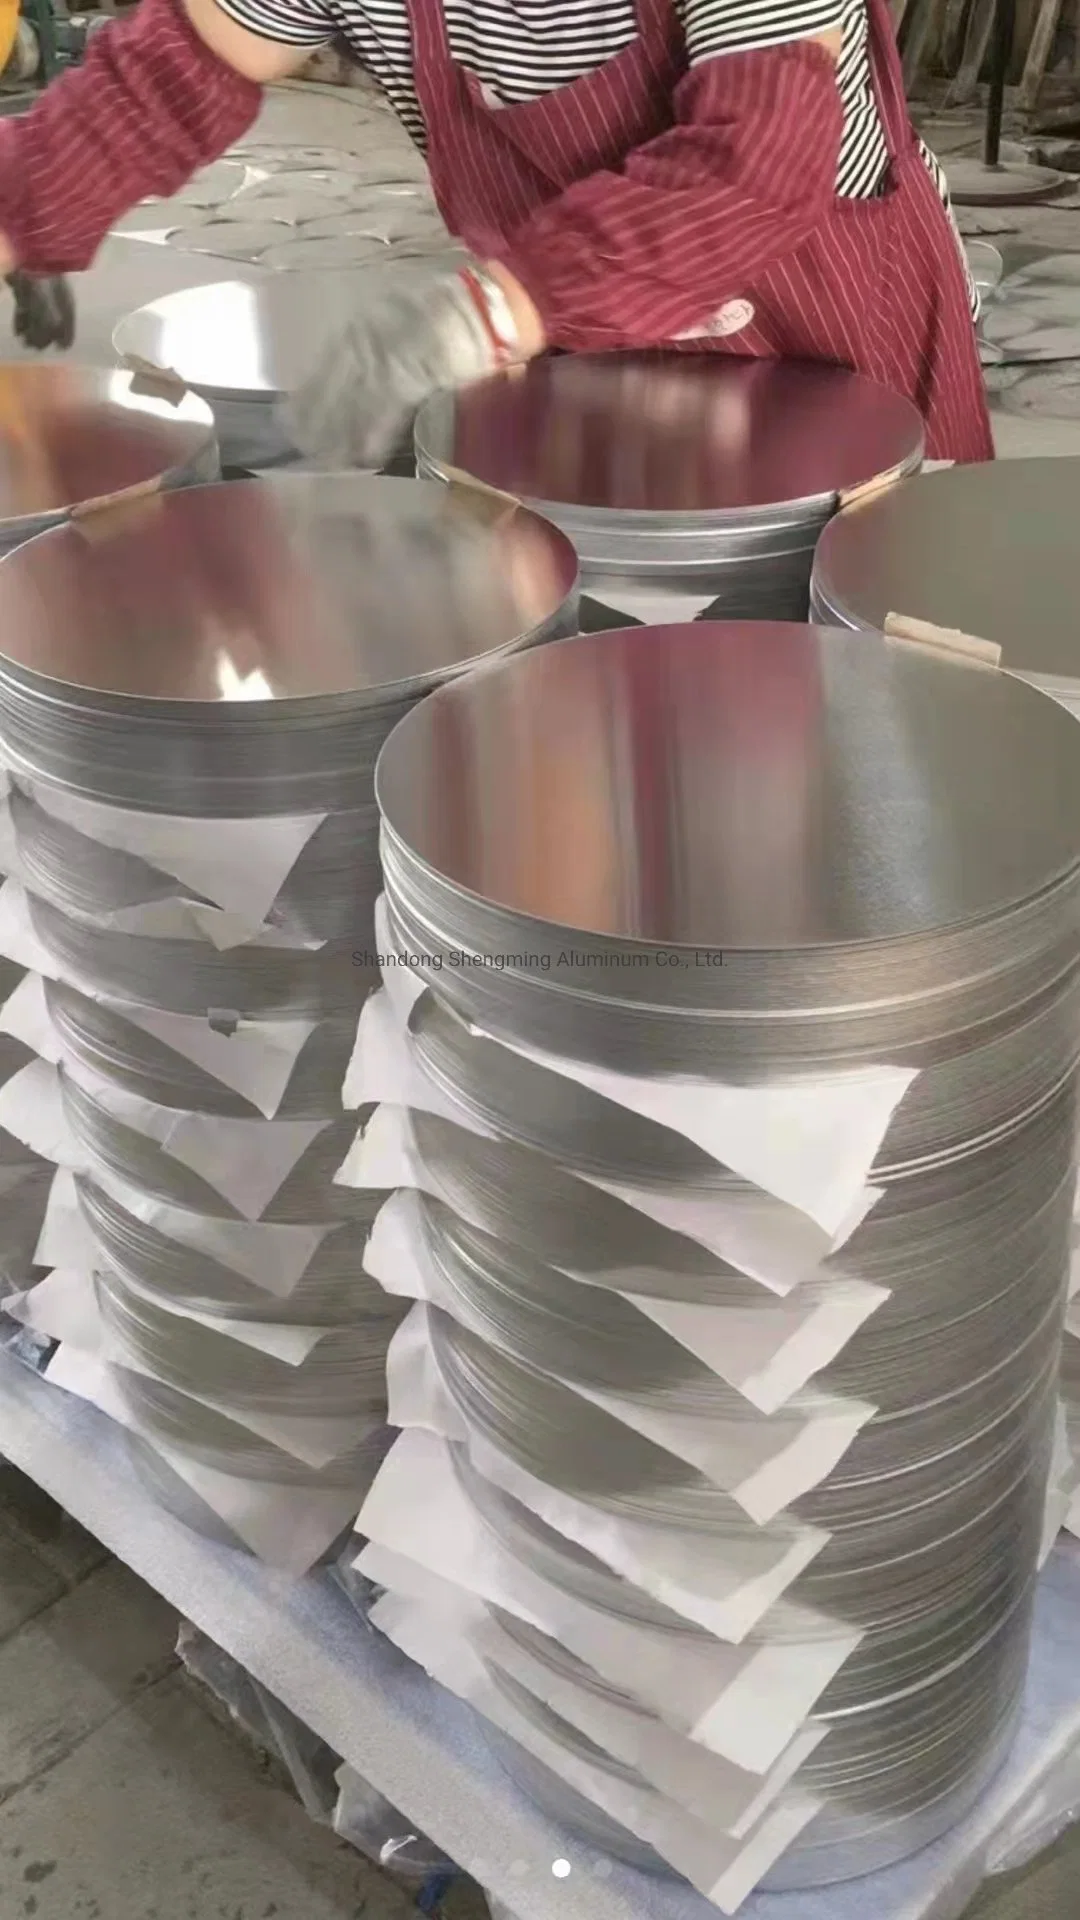 Aluminum 3003 Aluminum Circle Aluminum Discs Disks for Cookware Utensils